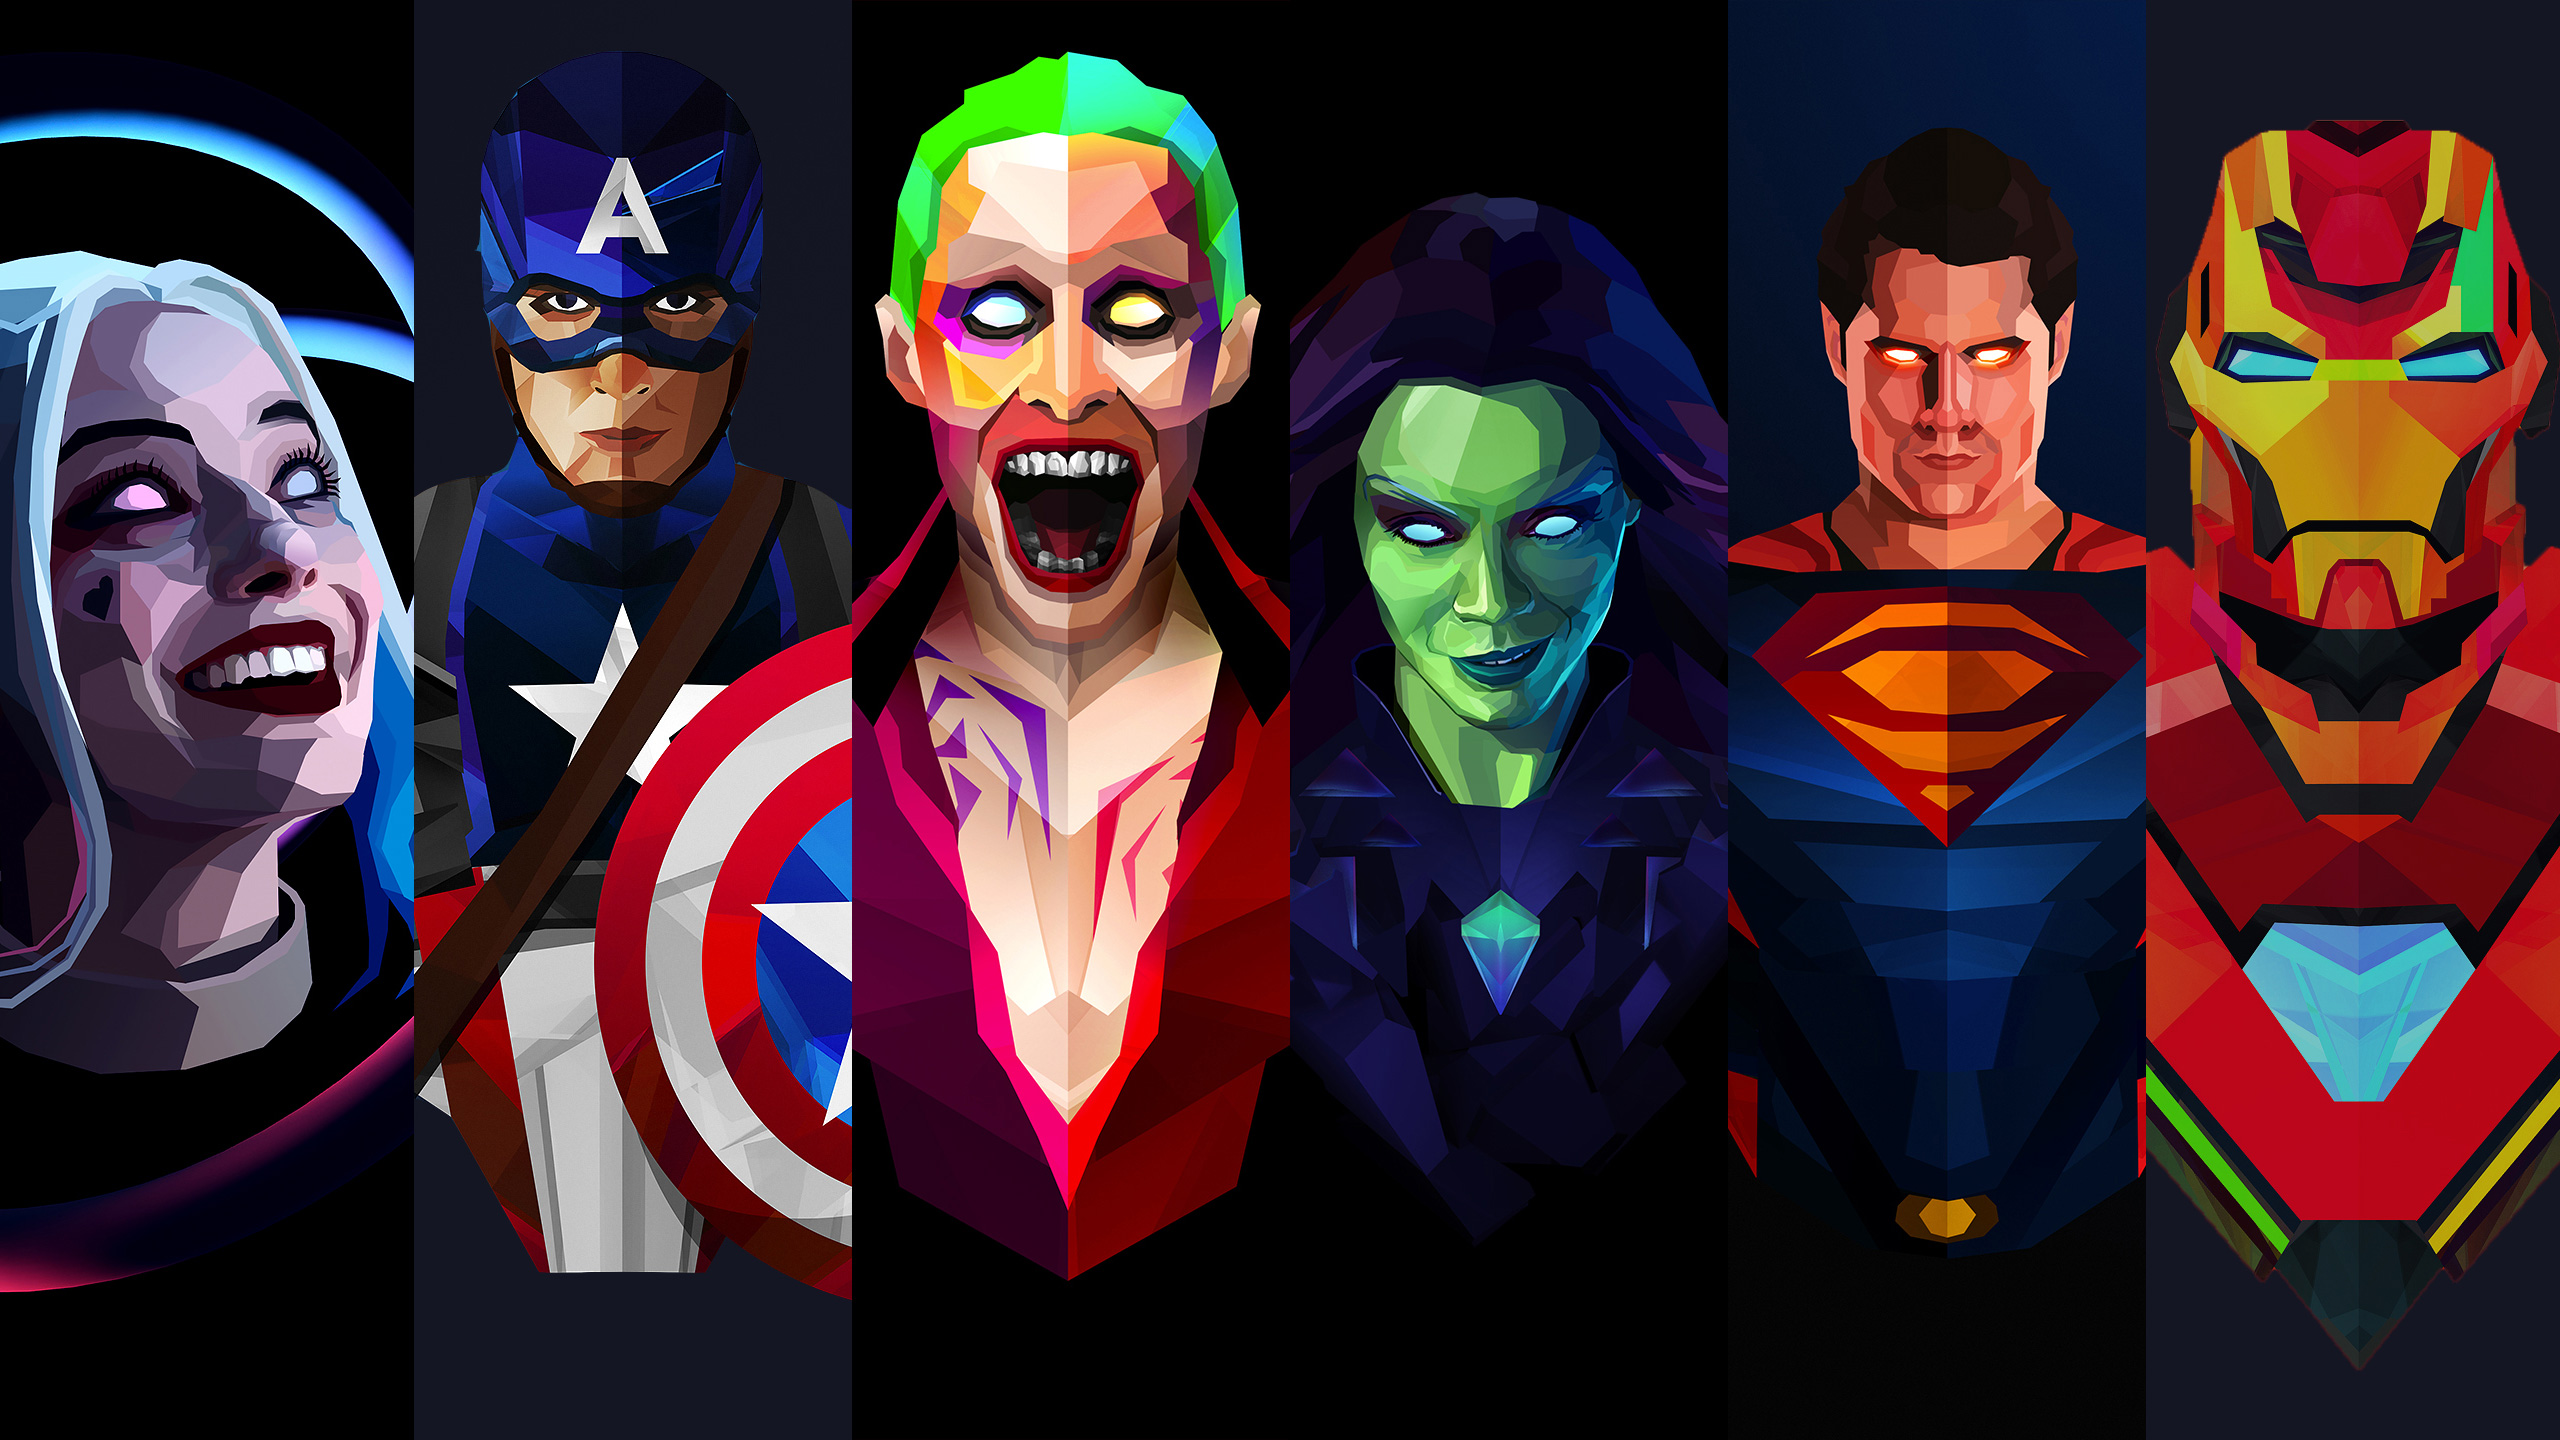 驚異とdcの壁紙,架空の人物,スーパーヒーロー,ヒーロー,正義リーグ,バットマン